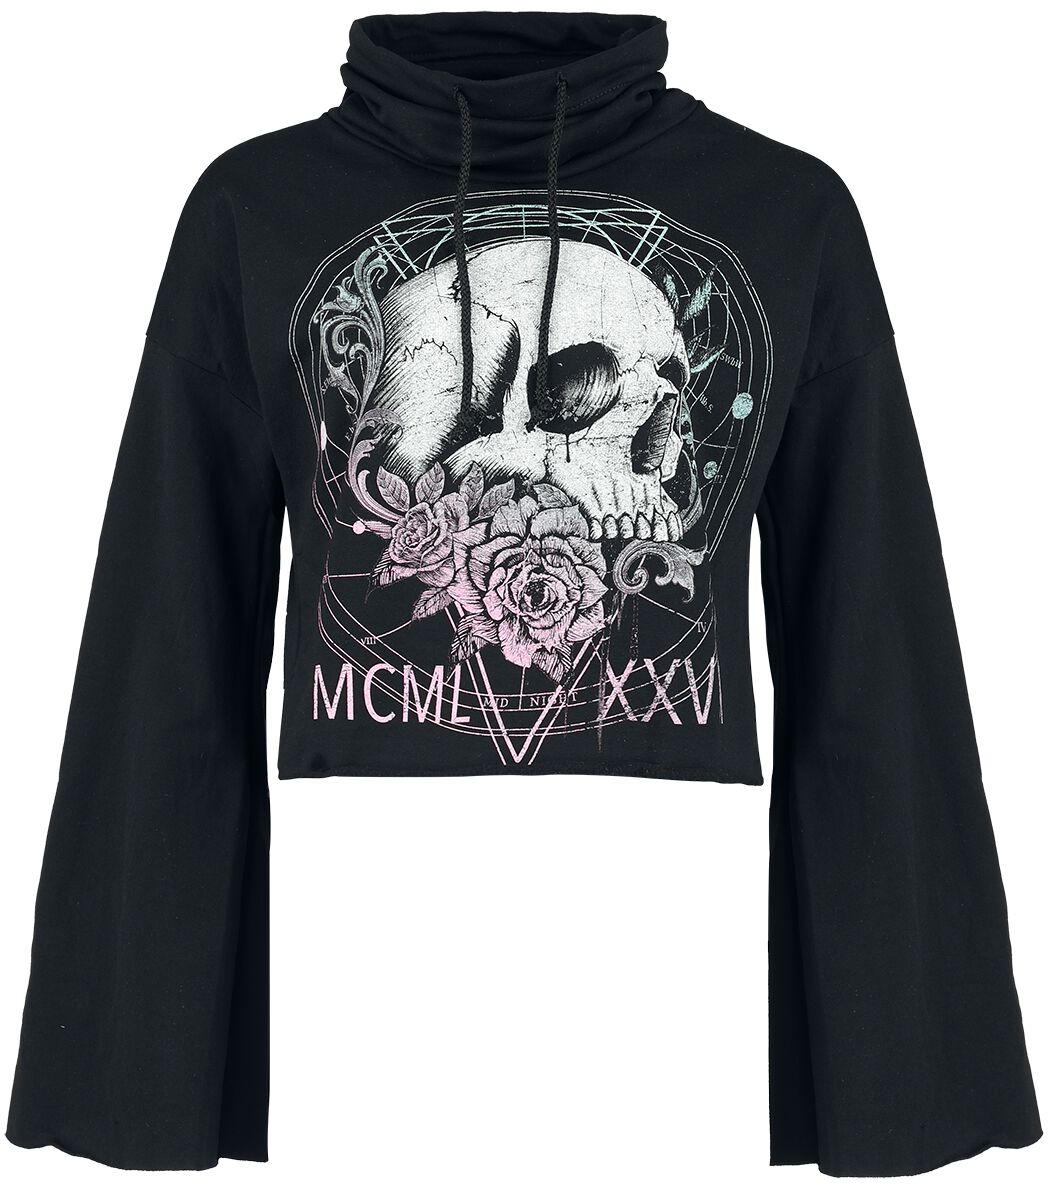 Alchemy England - Gothic Sweatshirt - Numbers Rainbow - S bis XXL - für Damen - Größe M - schwarz